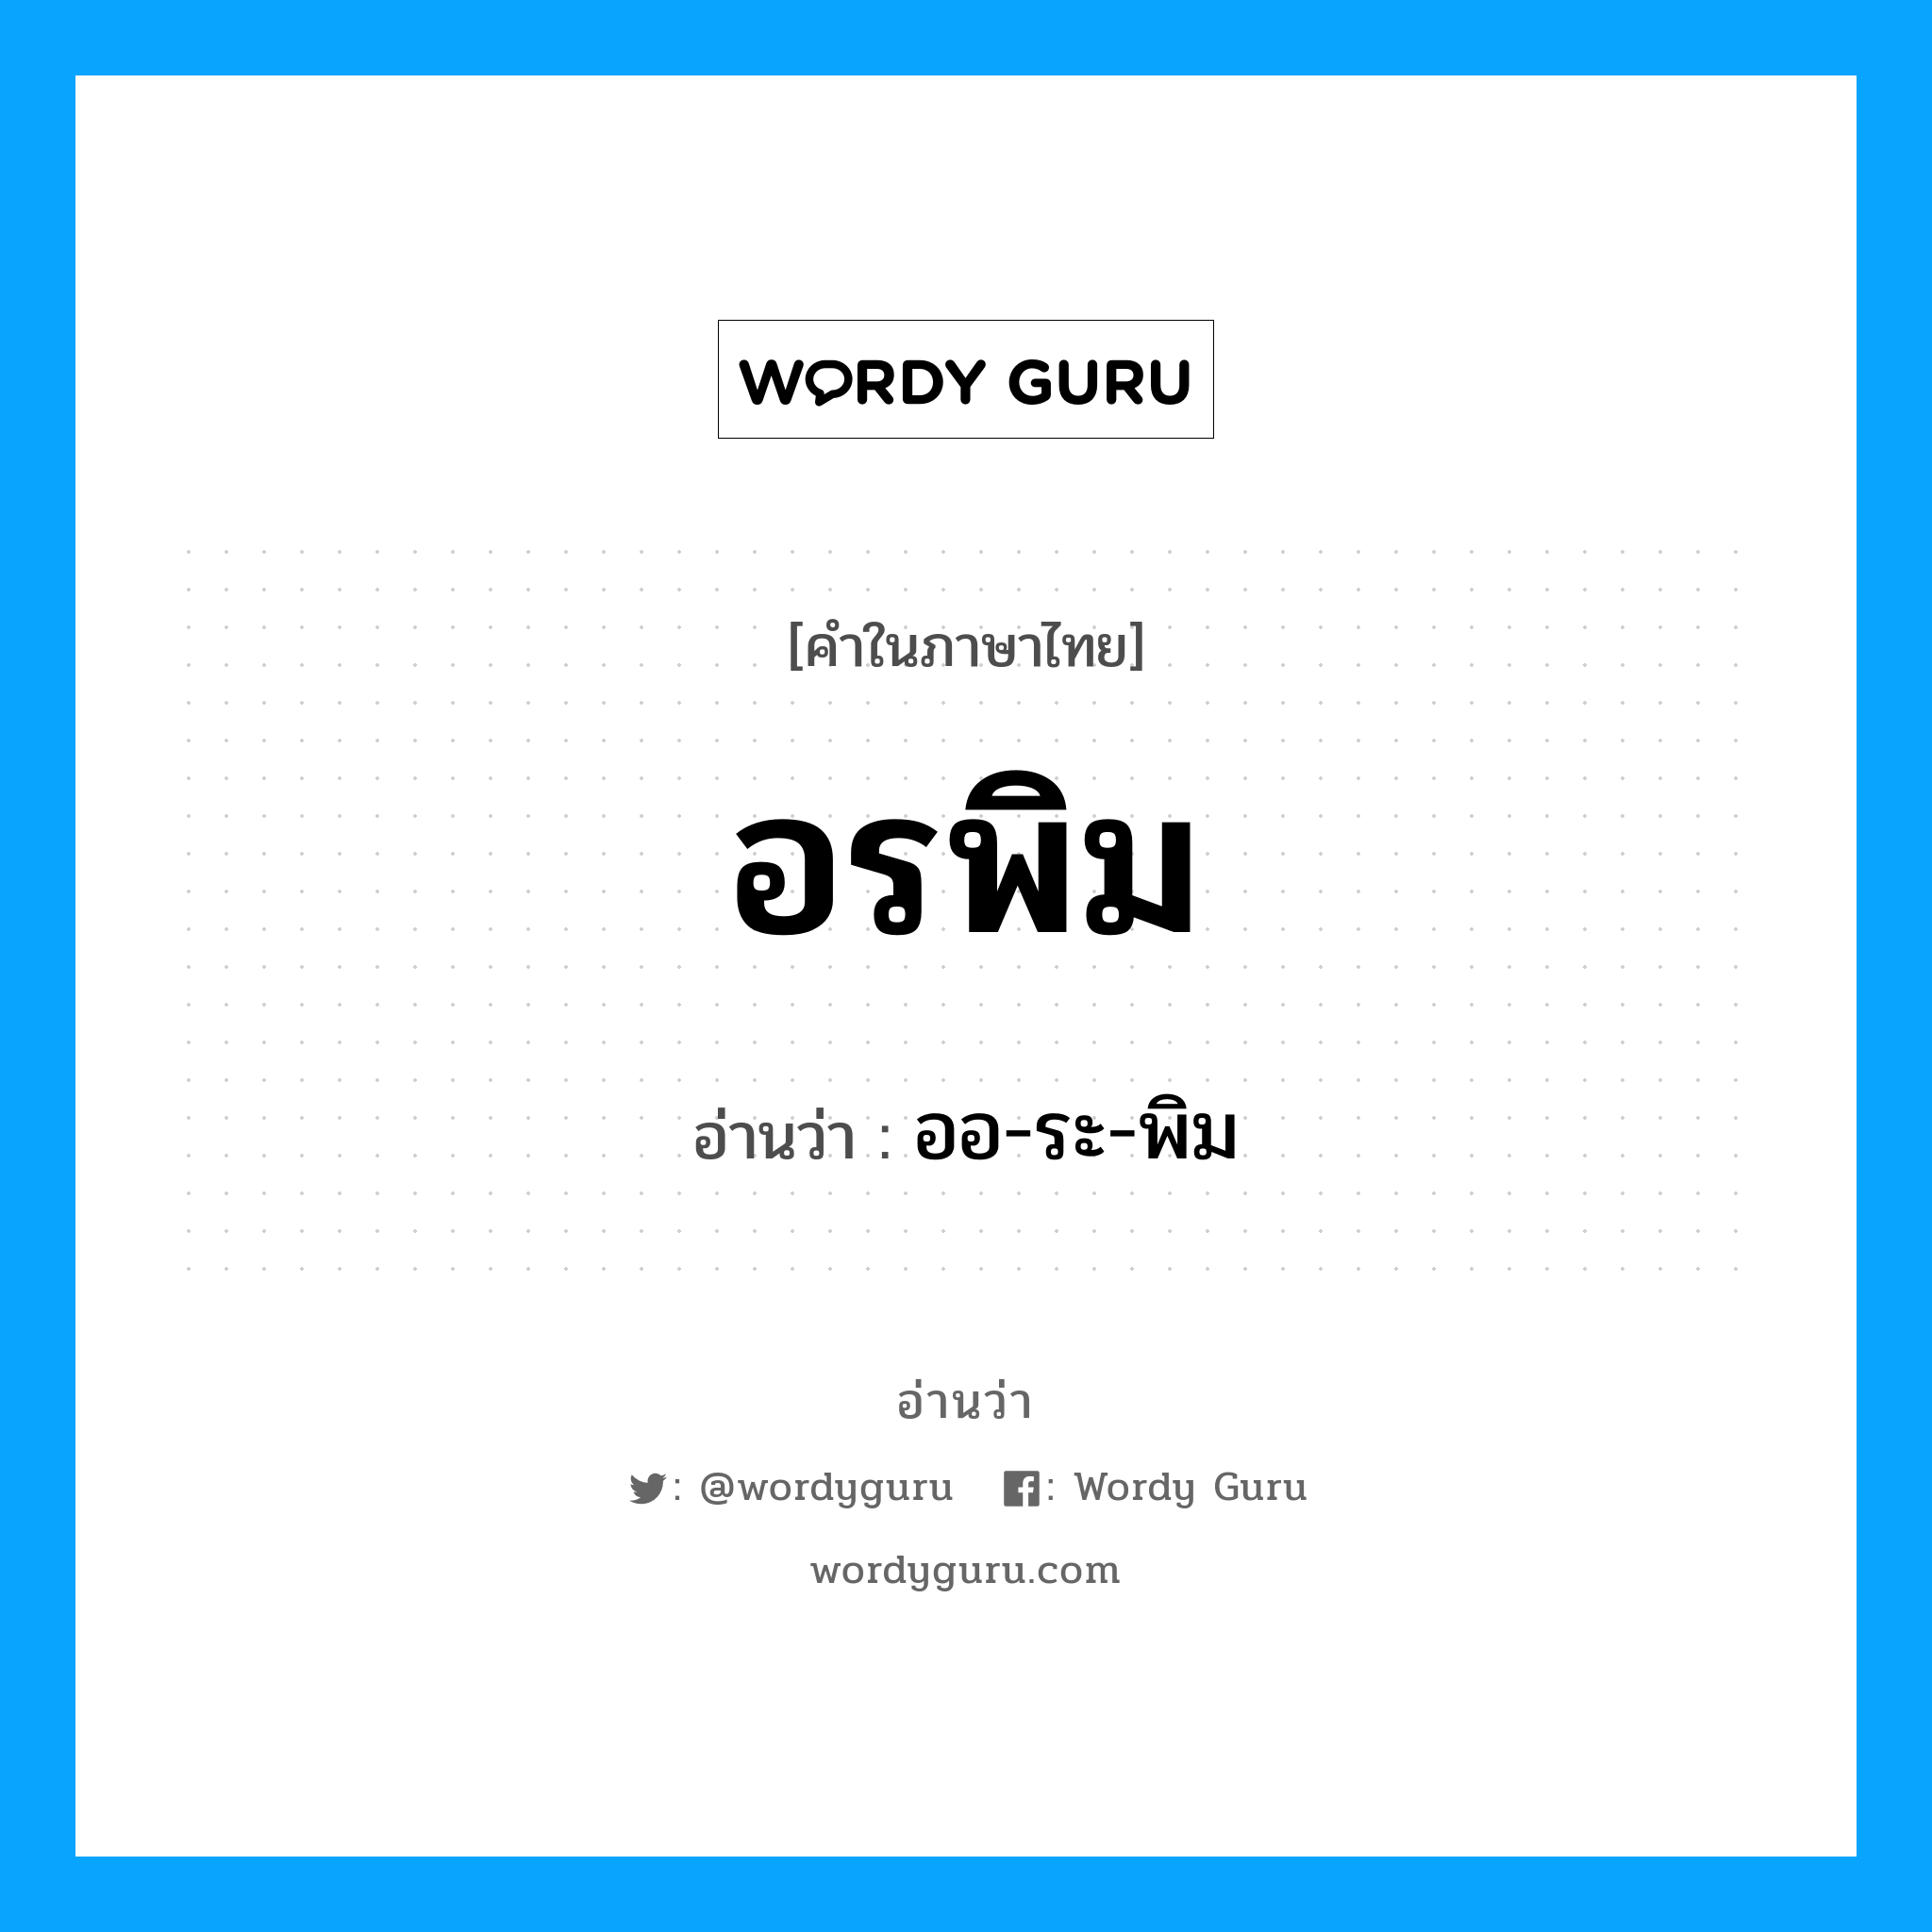 ออ-ระ-พิม เป็นคำอ่านของคำไหน?, คำในภาษาไทย ออ-ระ-พิม อ่านว่า อรพิม